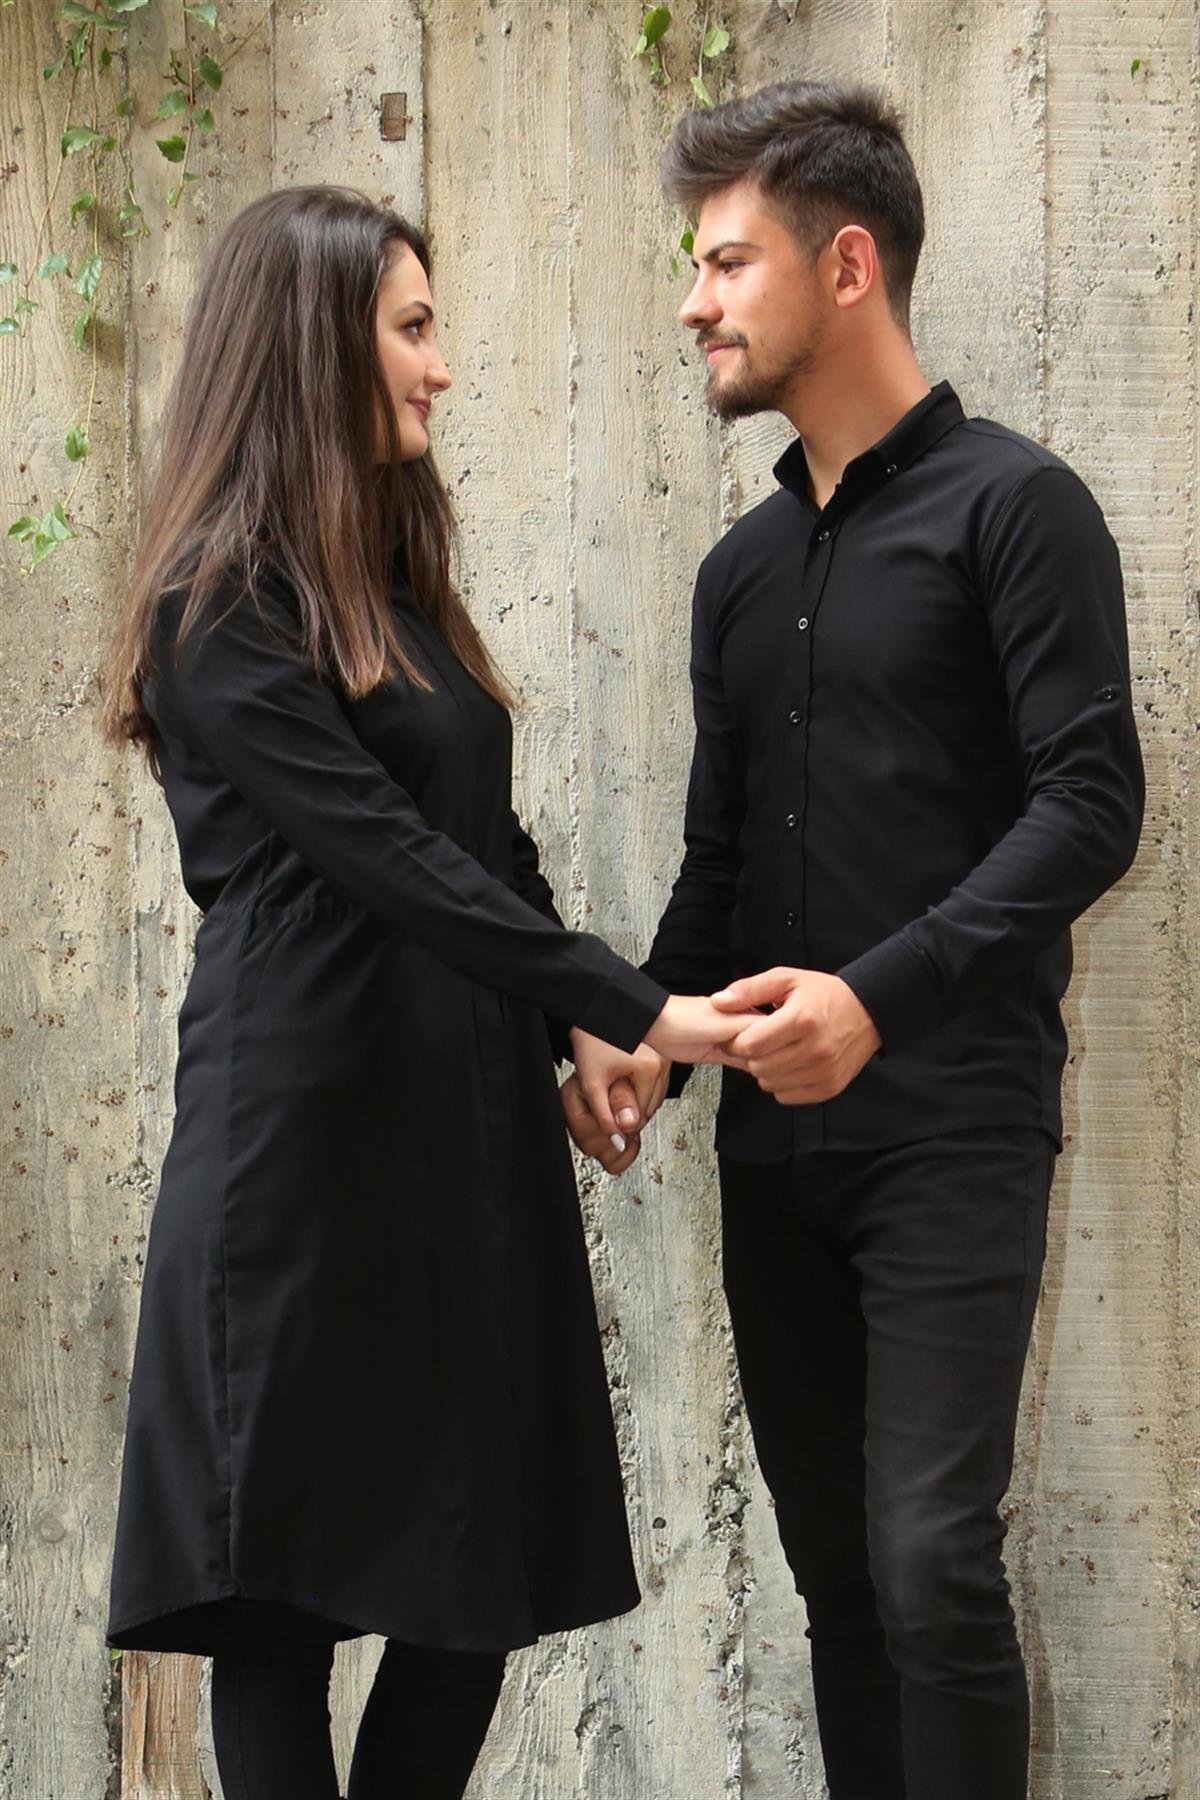 Armürlü Bengalin Düz Likralı Siyah Tesettür Gömlek Sevgili Kombini  giygit.com | Bay ve Bayan Giyim ve Sevgili Kombinleri